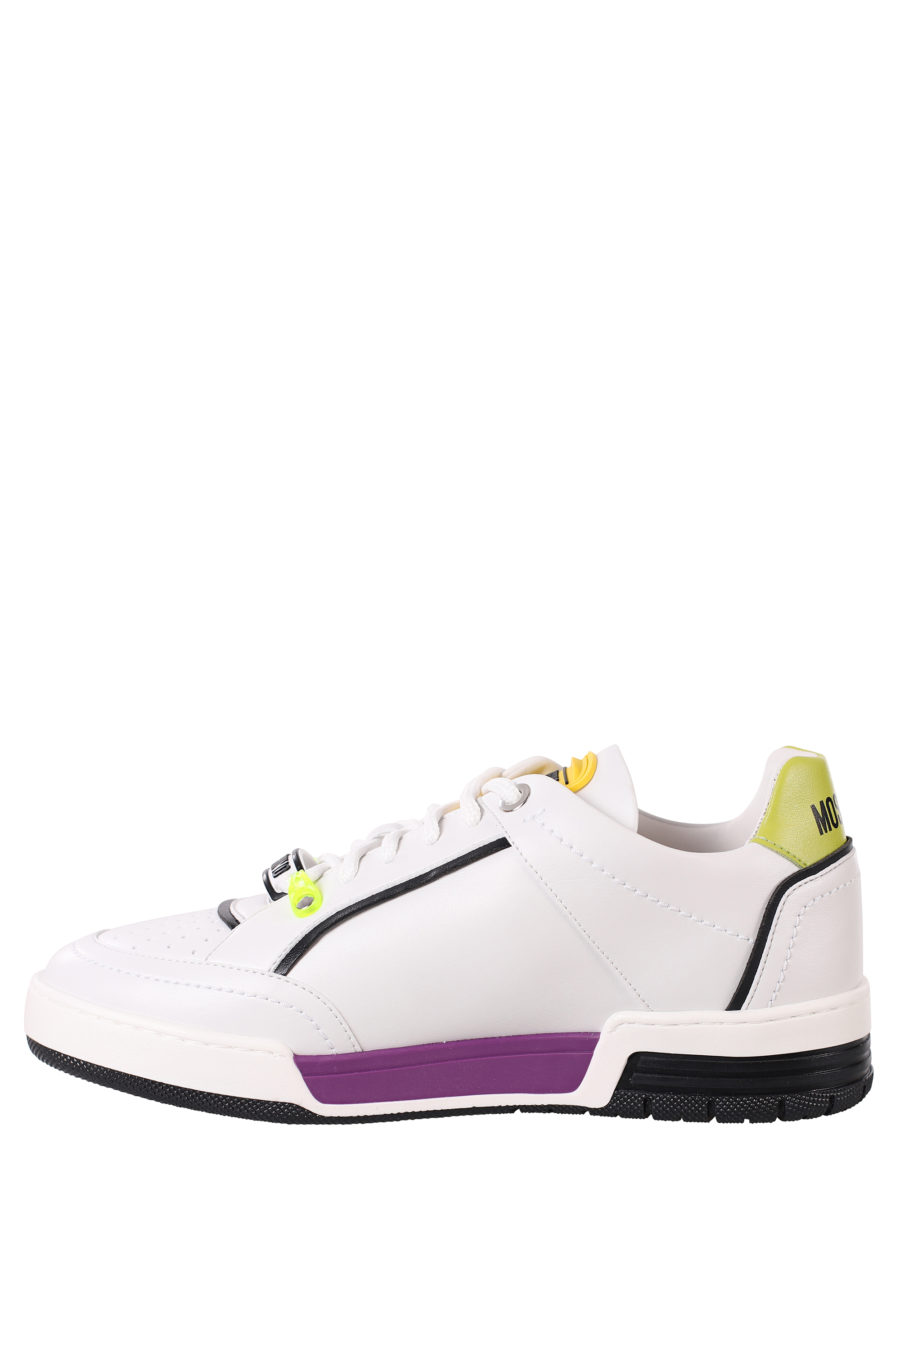 Zapatillas blancas con detalles lila y amarillo - IMG 0379